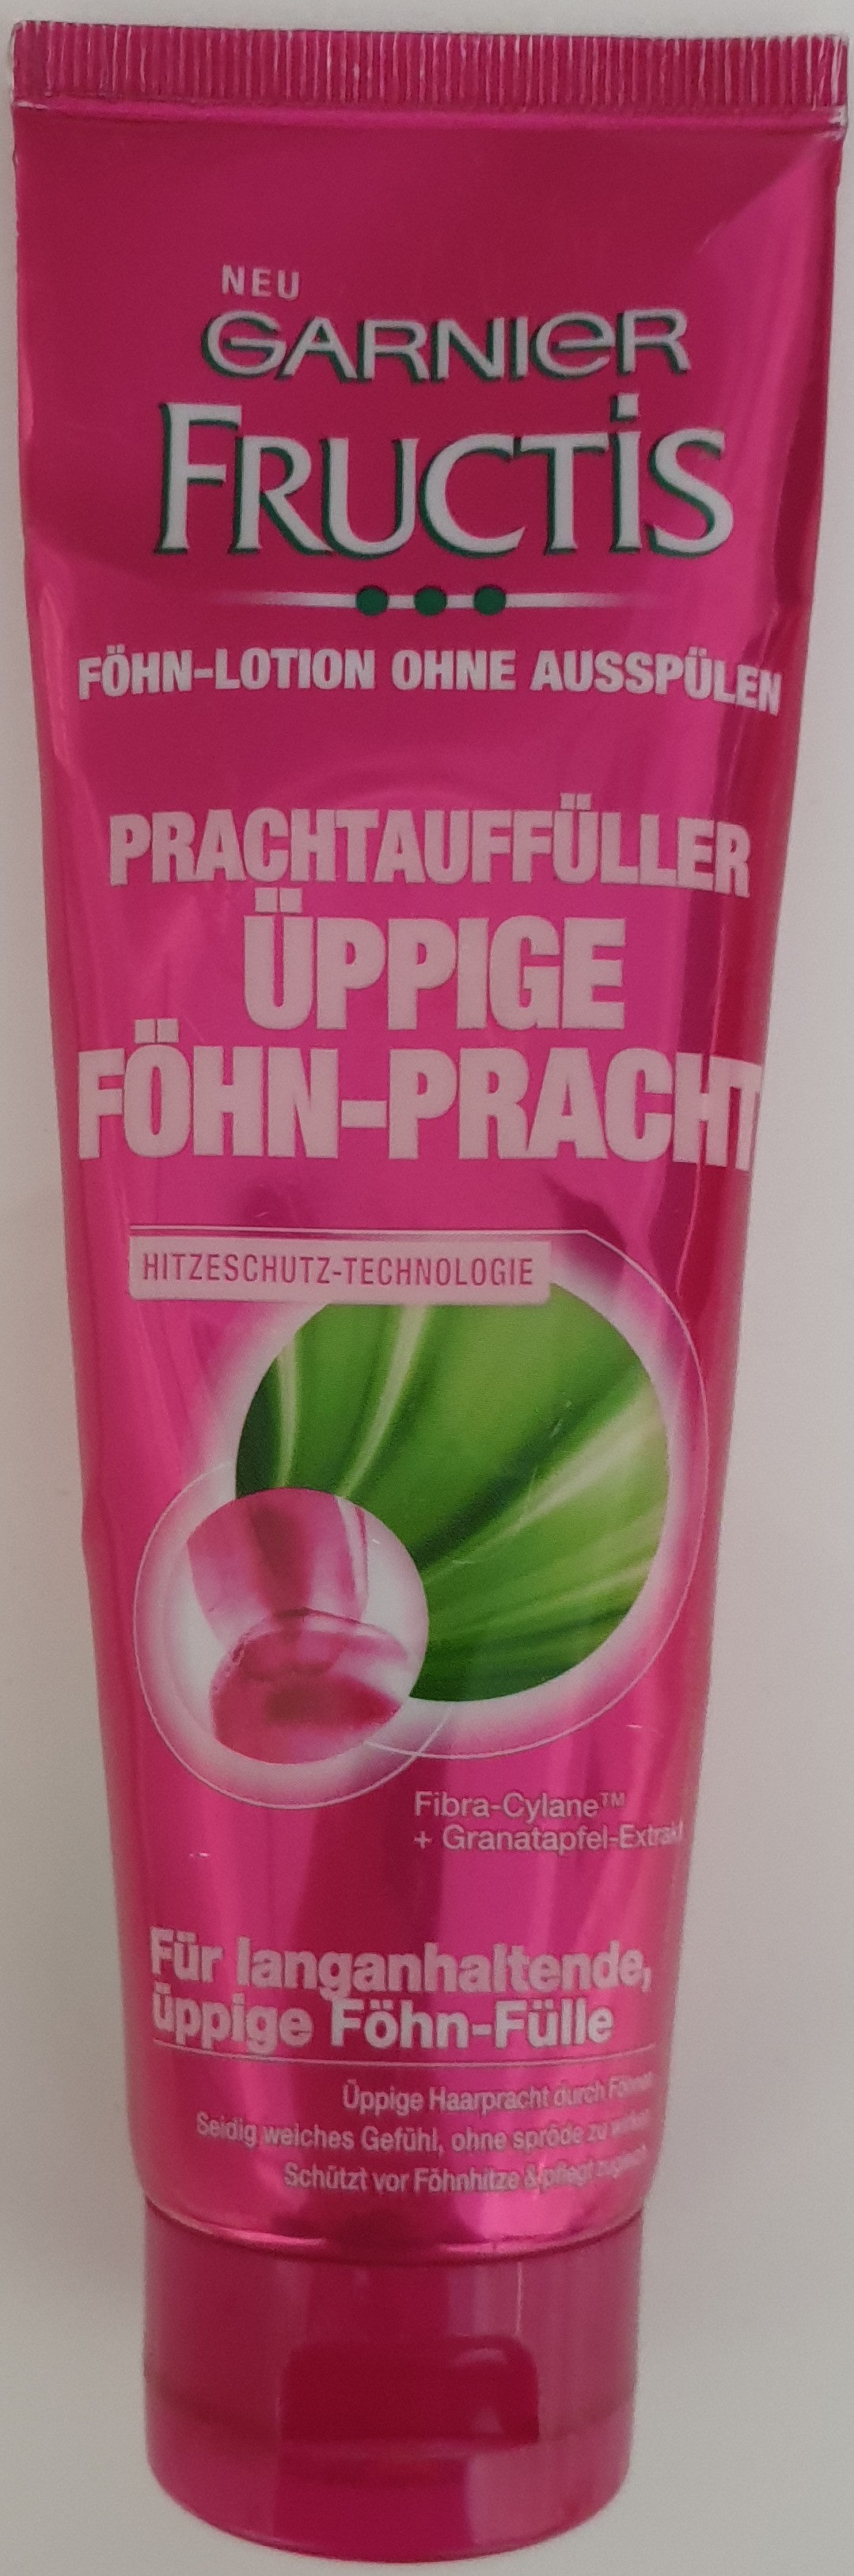 Fructis Prachtauffüller Föhn-Pracht - Produkt - de